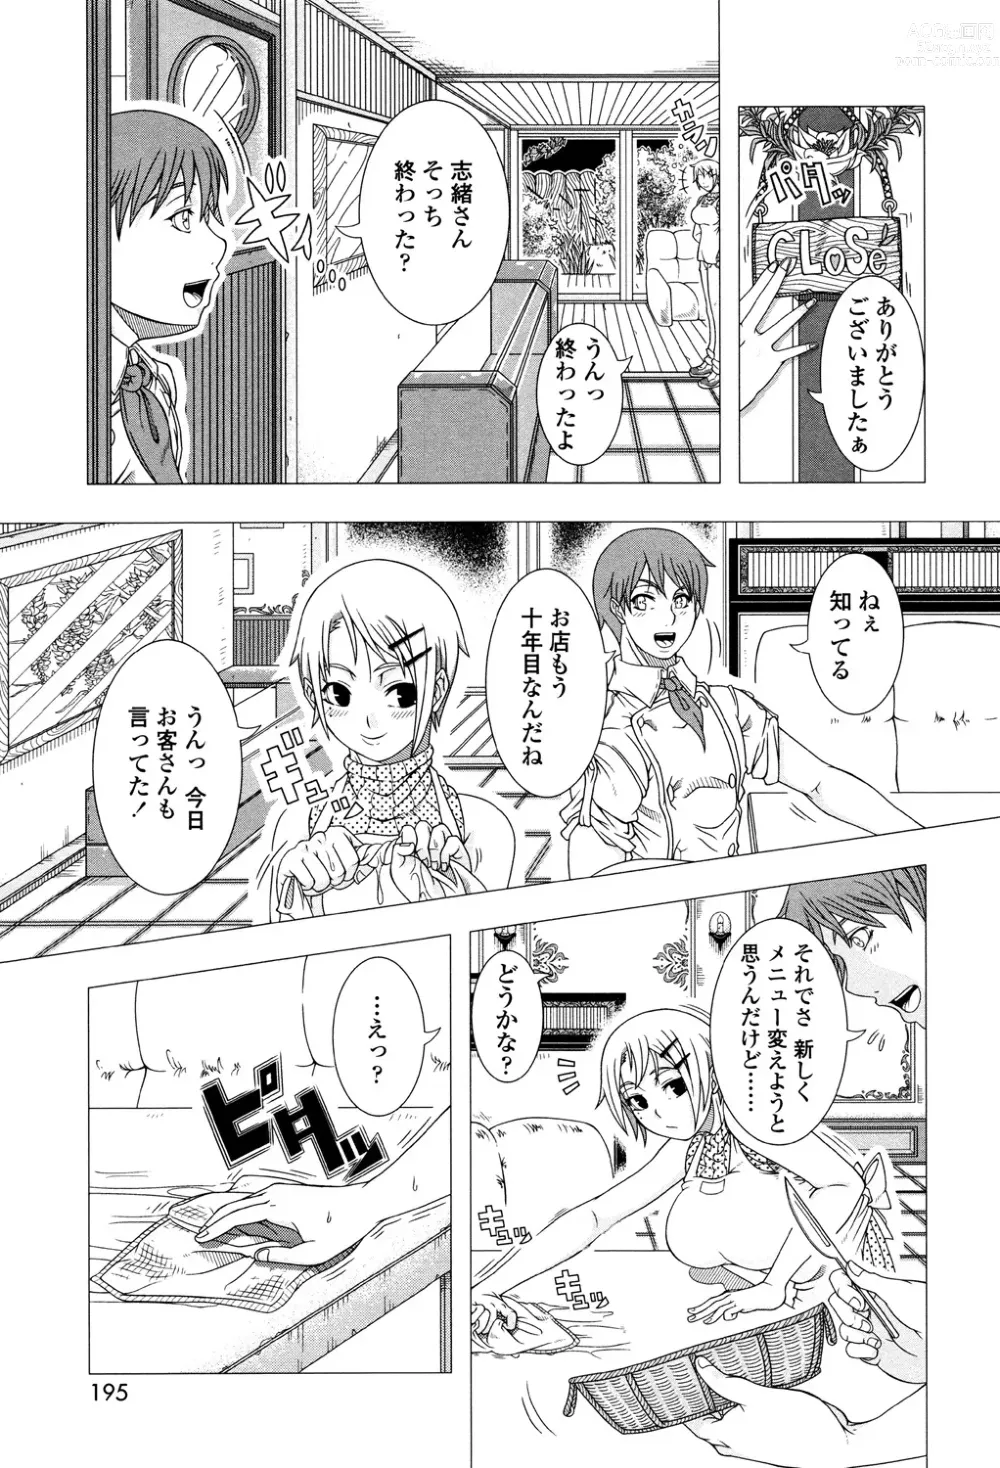 Page 193 of manga Hitozuma Life - Married Woman Life